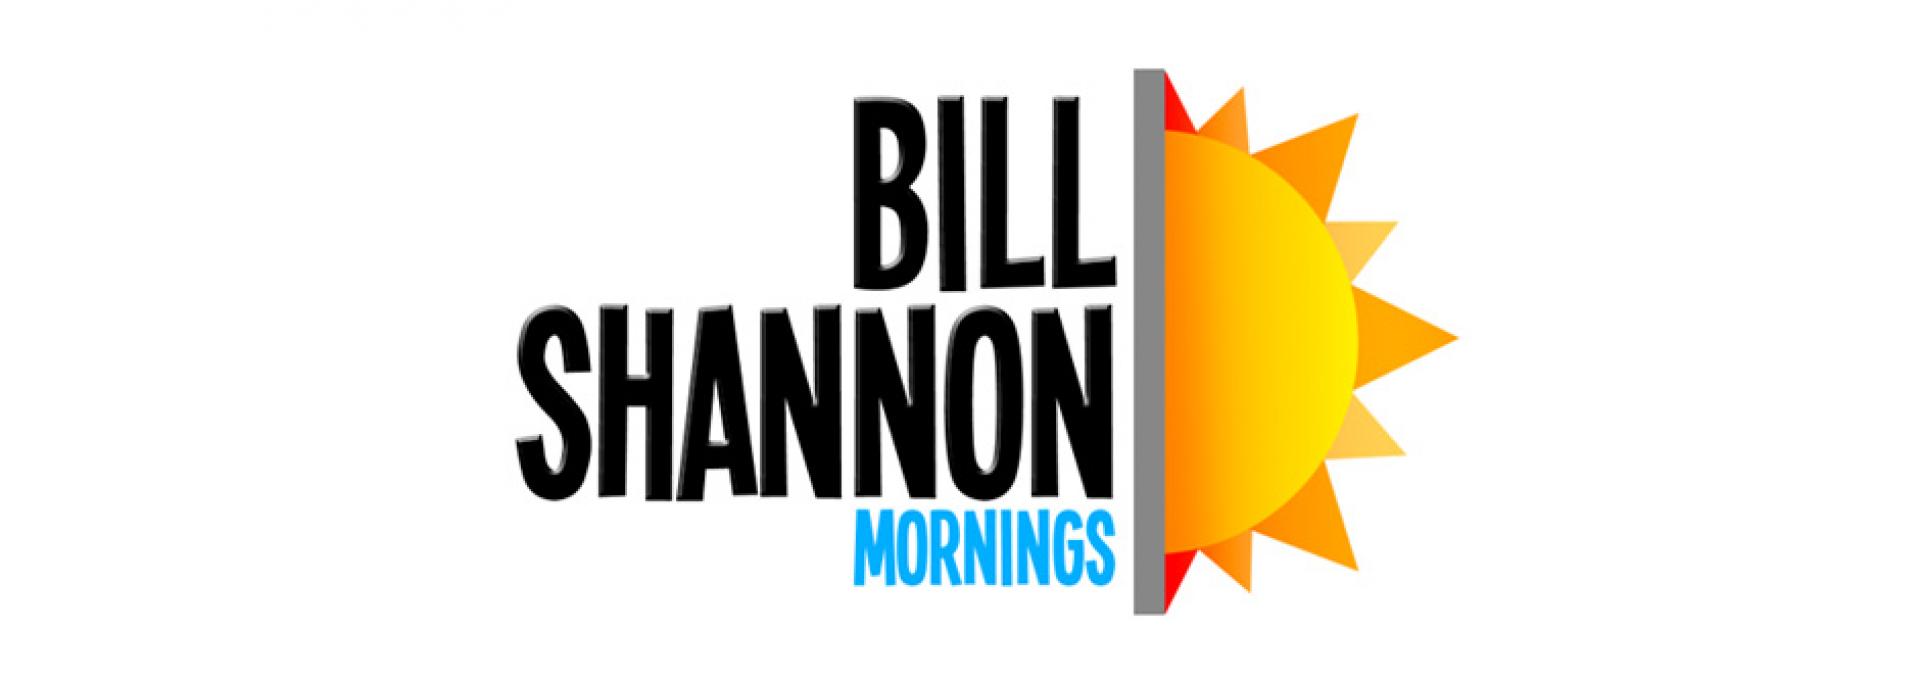 BILL SHANNON MORNINGS hero